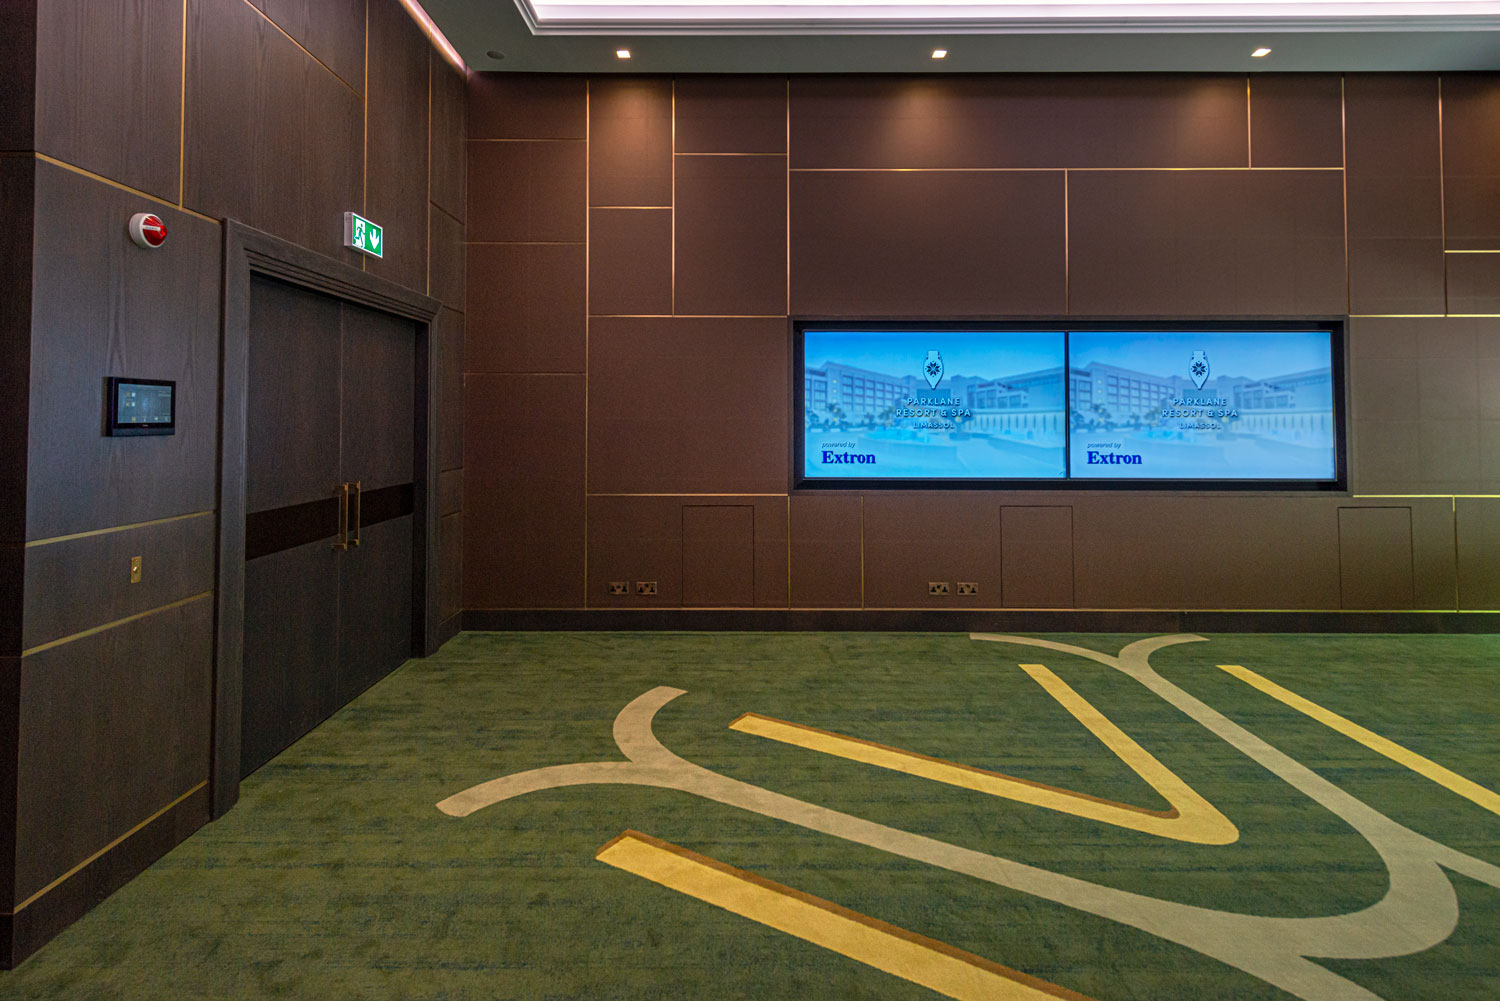 Vignette de l'espace d'accueil de l'hôtel avec deux écrans muraux